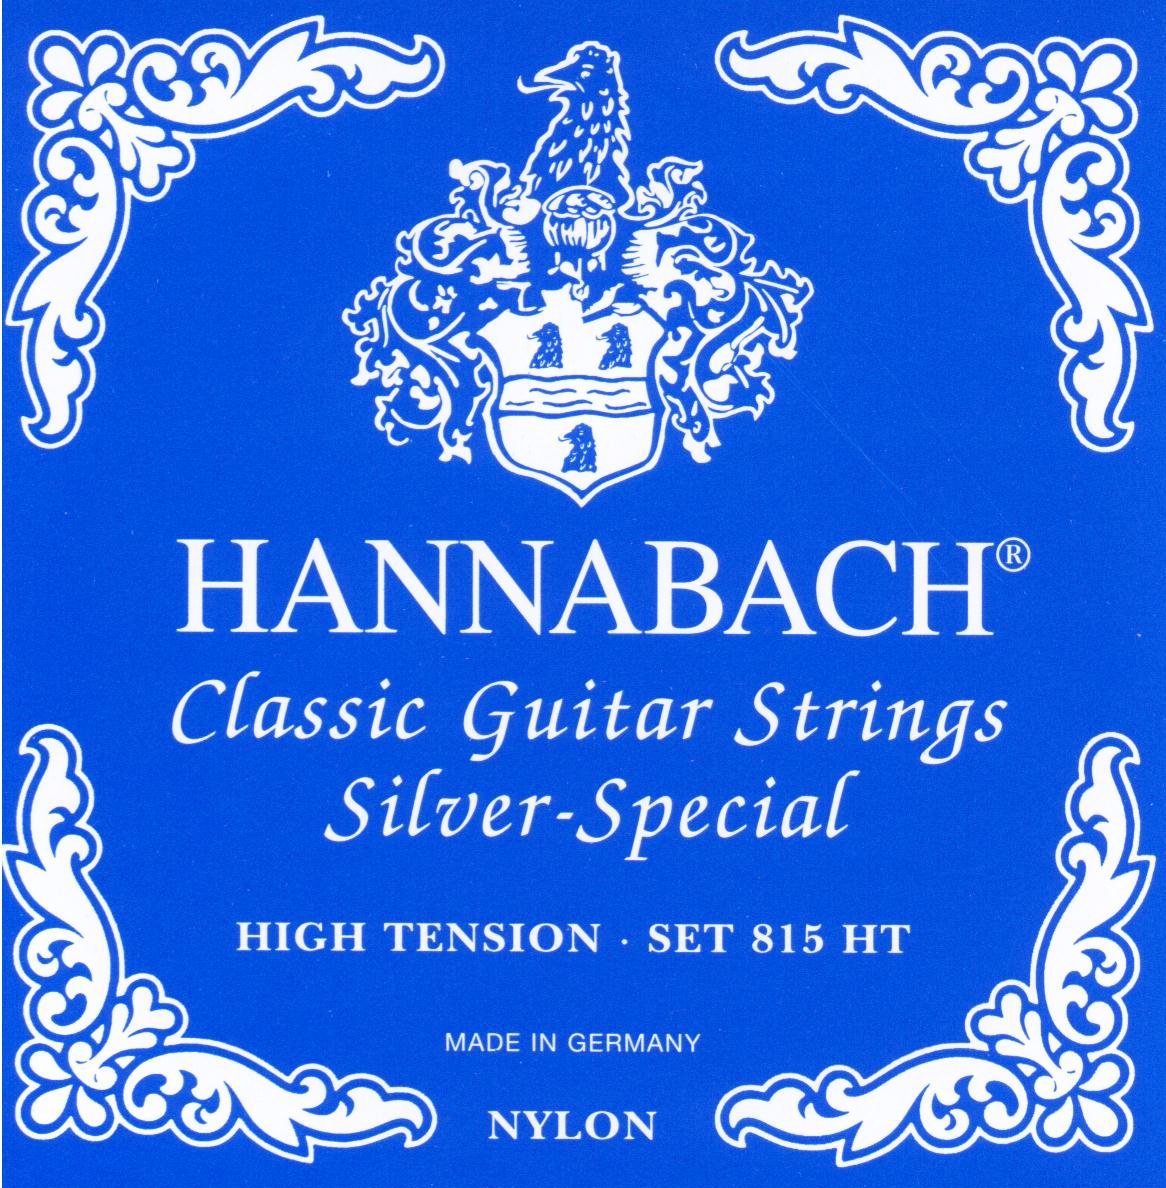 Hannabach Silver Special Serie 815 Konzertgitarren Saitensatz - Musik-Ebert Gmbh